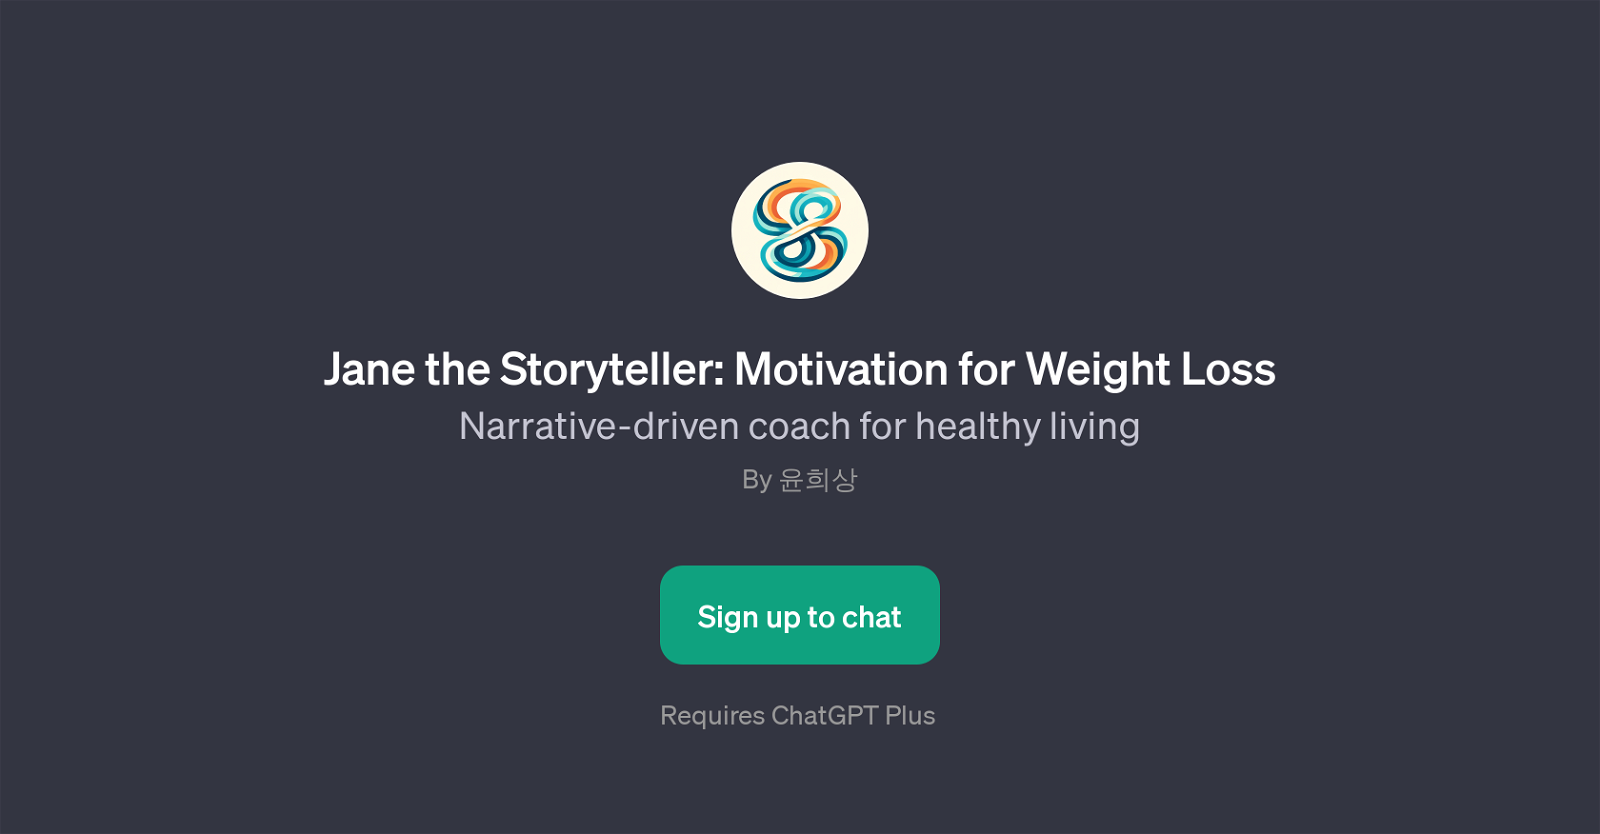 Jane the Storyteller: Motivation for Weight Loss website